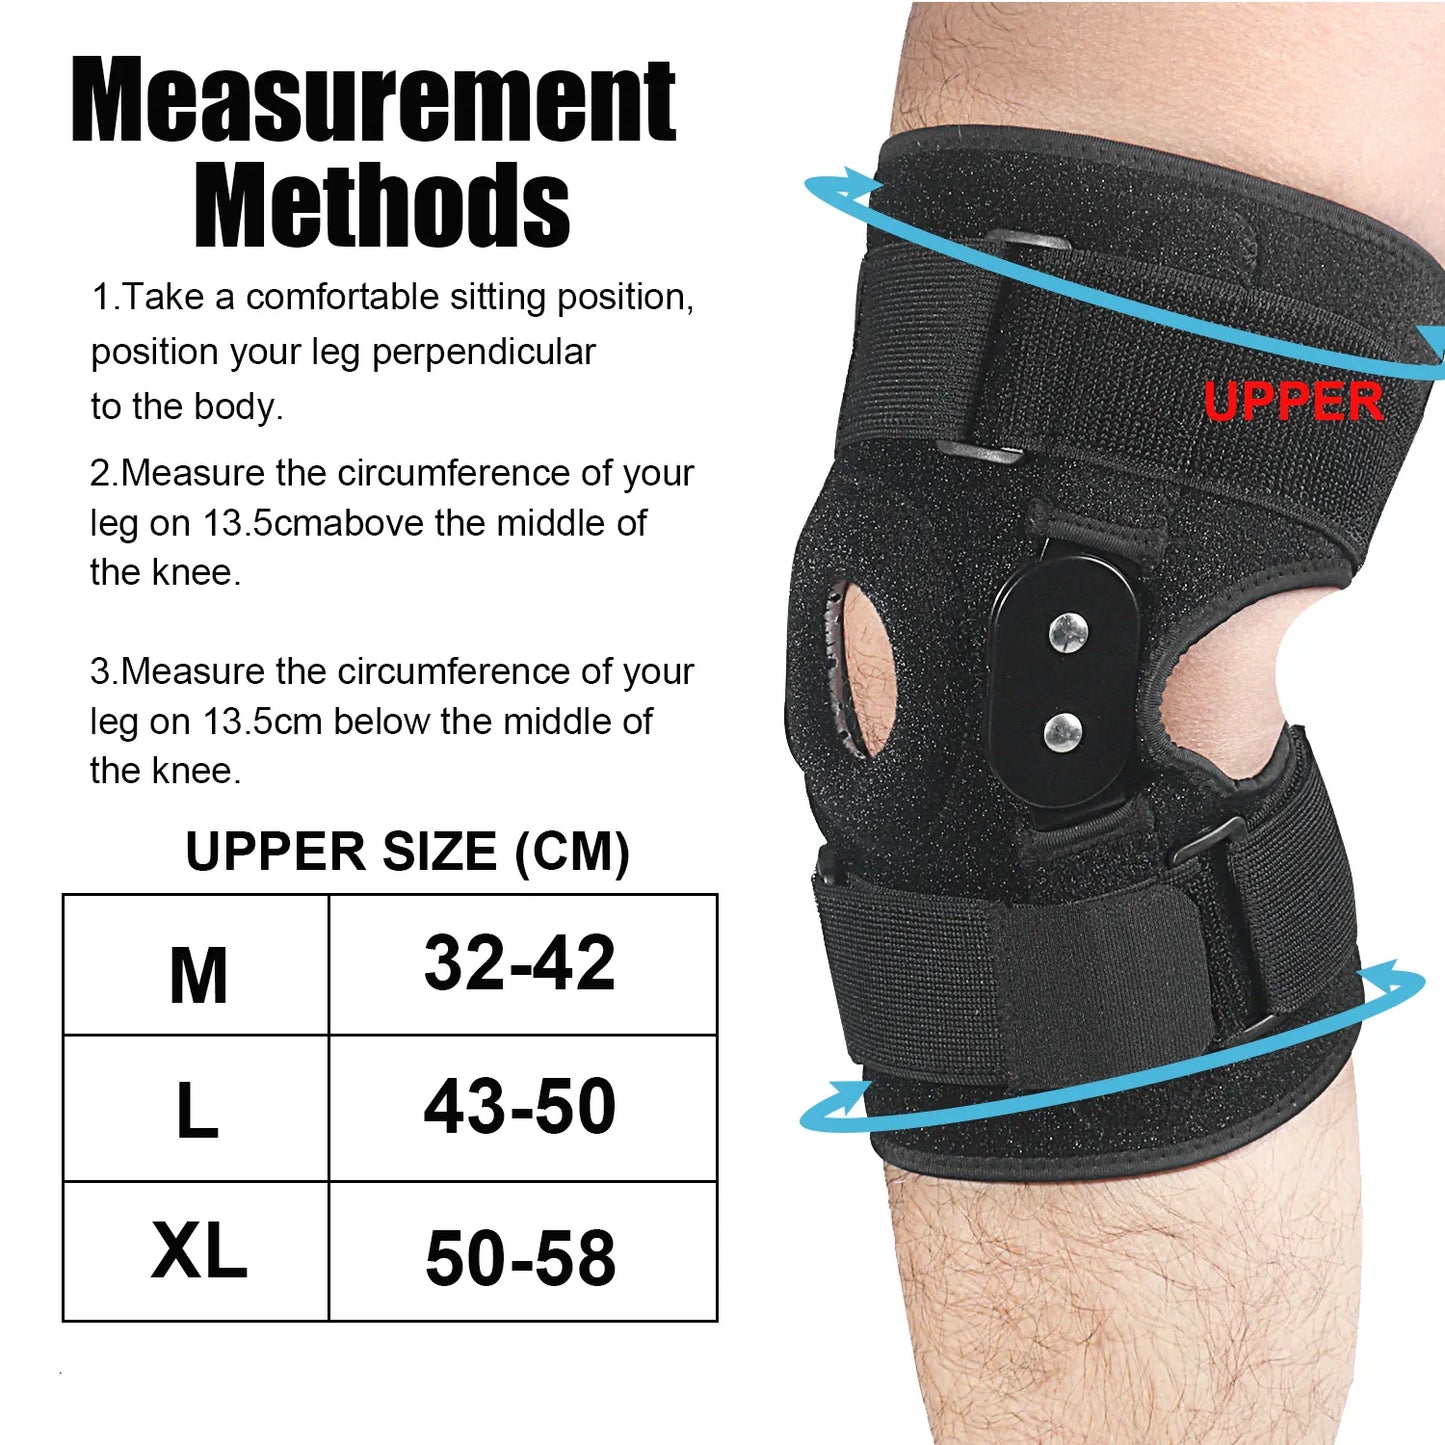 FlexiGuard verstellbare und gelenkige Knieschiene für optimale Unterstützung und Schmerzlinderung